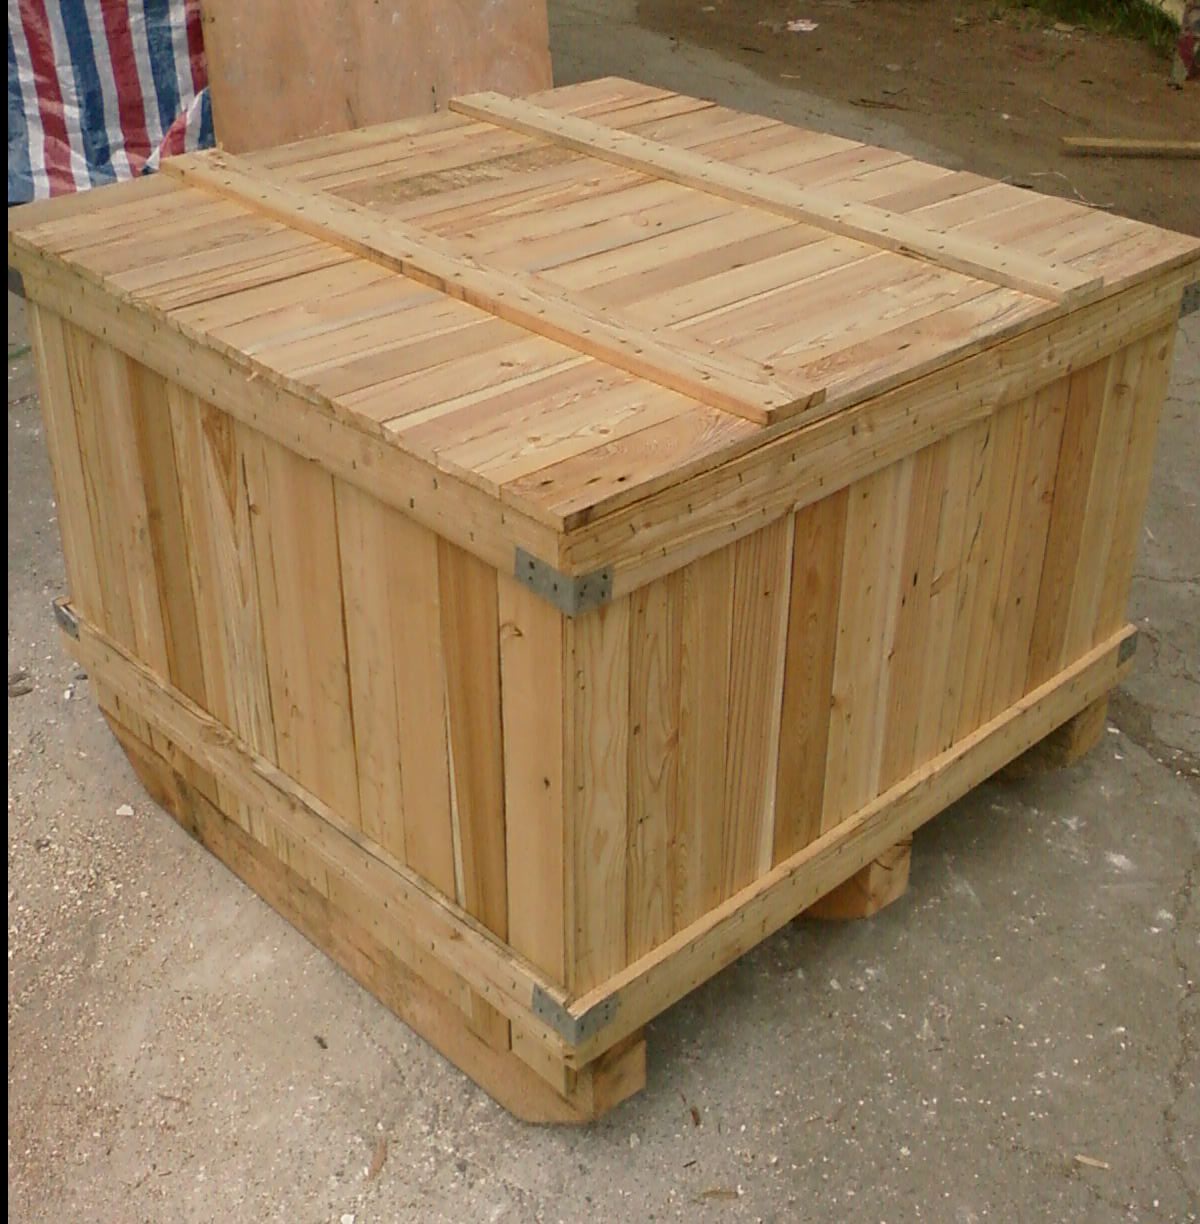 木包装箱具有防水性能好生产工艺简单成本较低使用适应性强